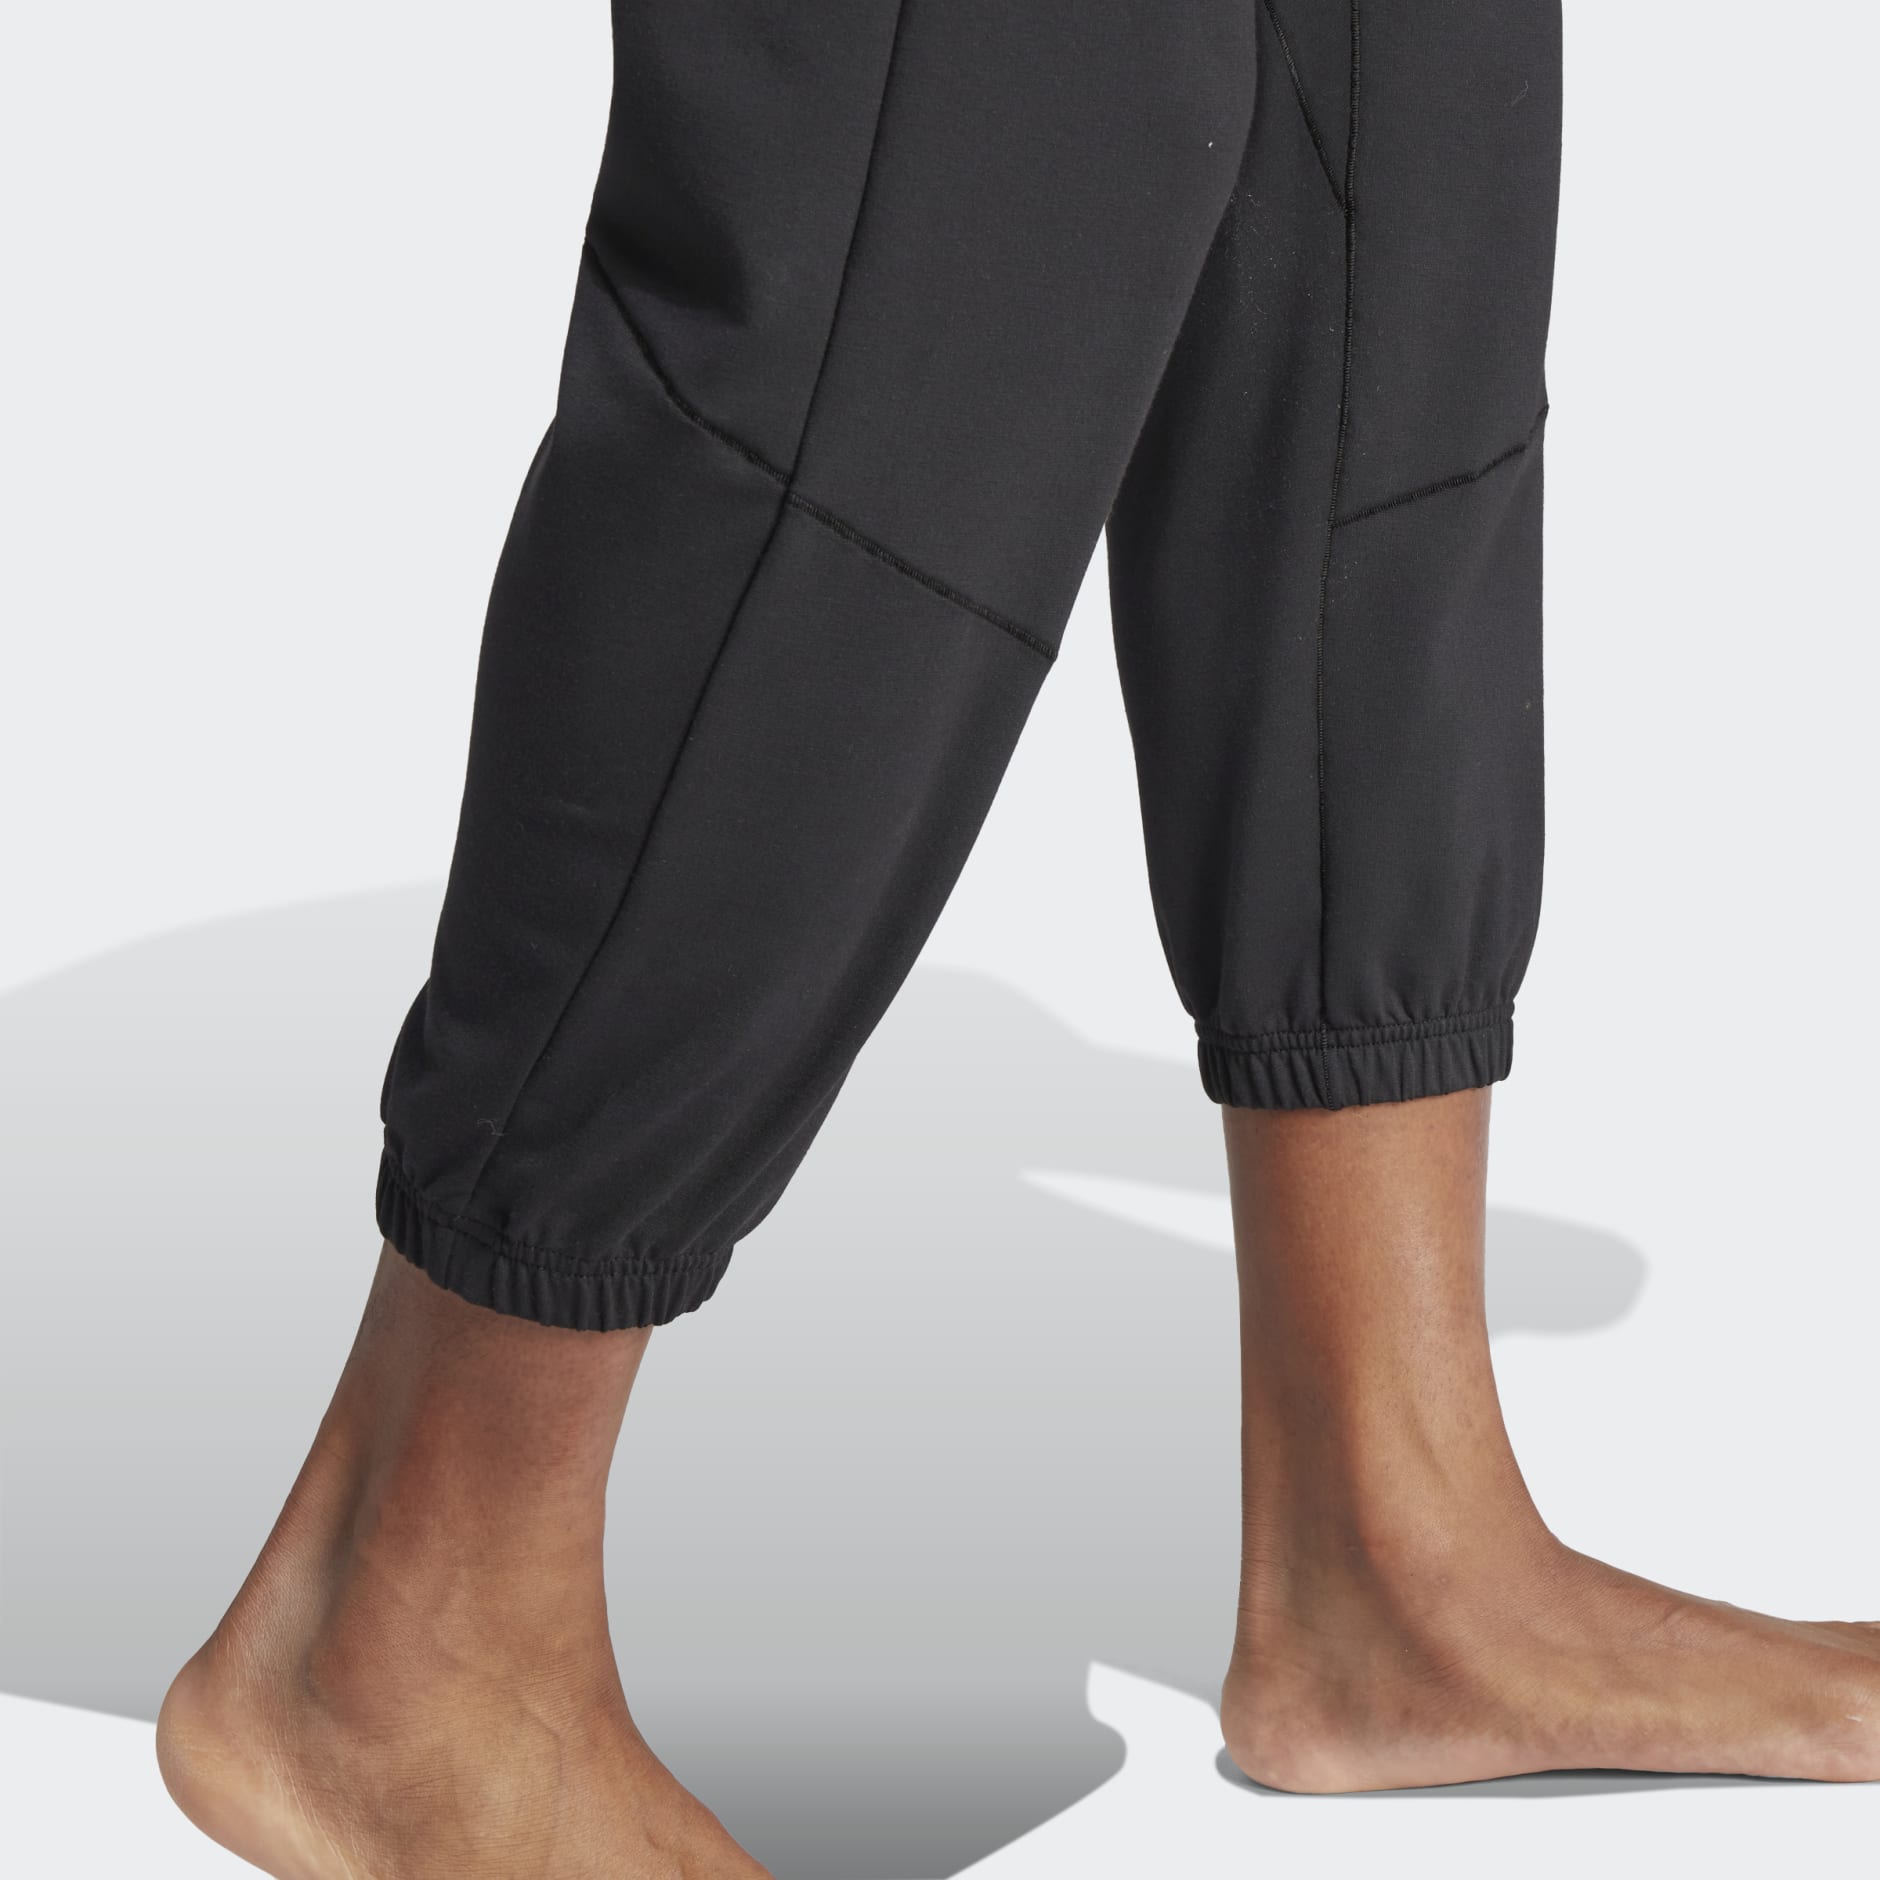 adidas Designed for Training Yoga Training 7/8 Pants - Black